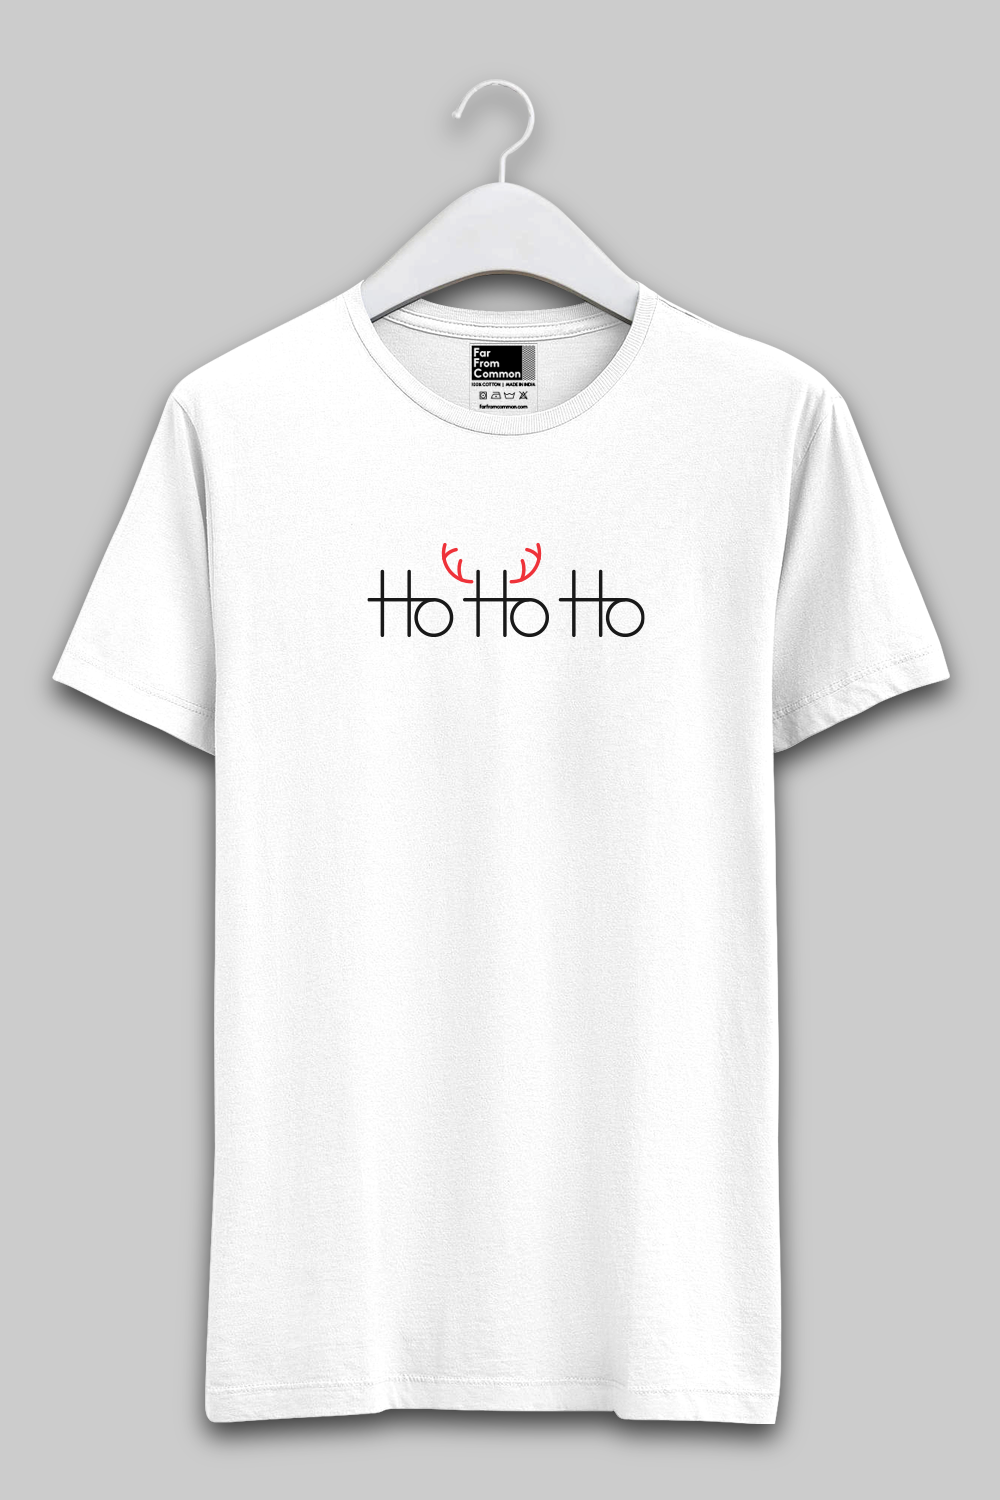 Ho Ho Ho White Unisex T-shirt